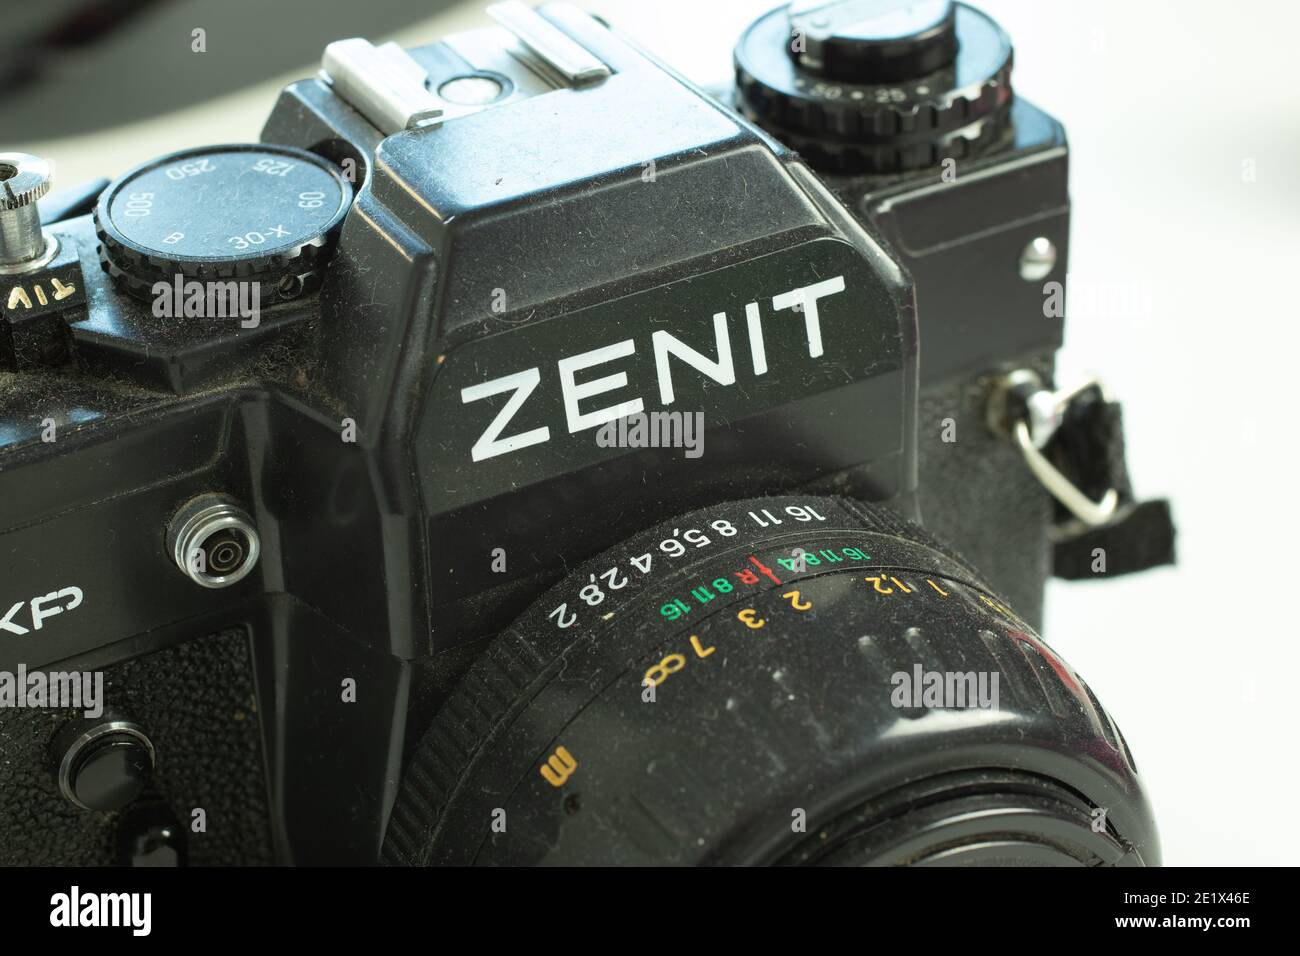 Moscou, Russie - 5 décembre 2020 : appareil photo Zenit, appareil photo rétro soviétique d'époque, Editorial. Banque D'Images